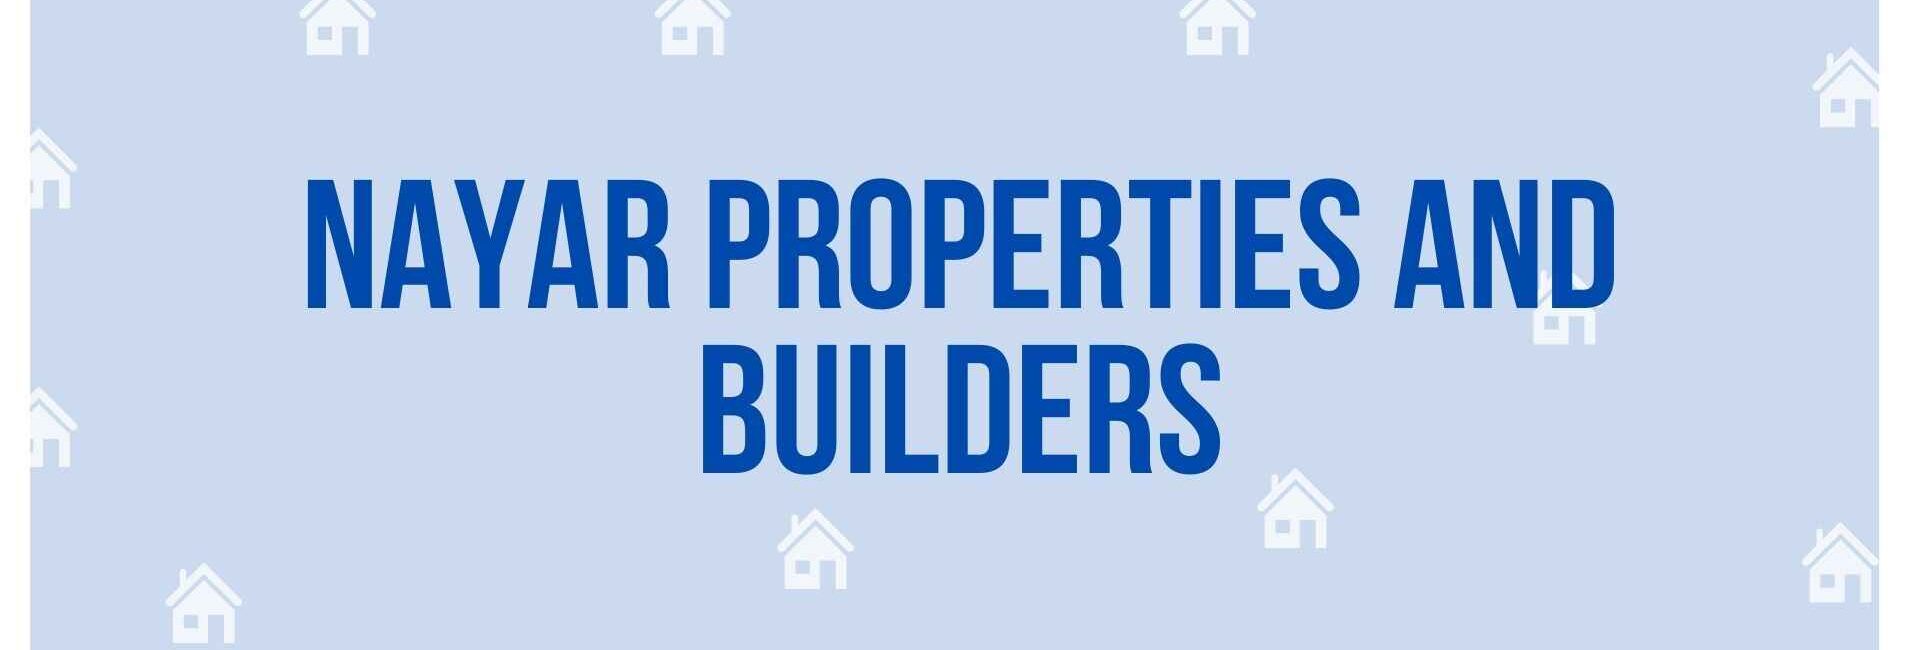 Nayar Properties and Builders - Property Dealer in Noida